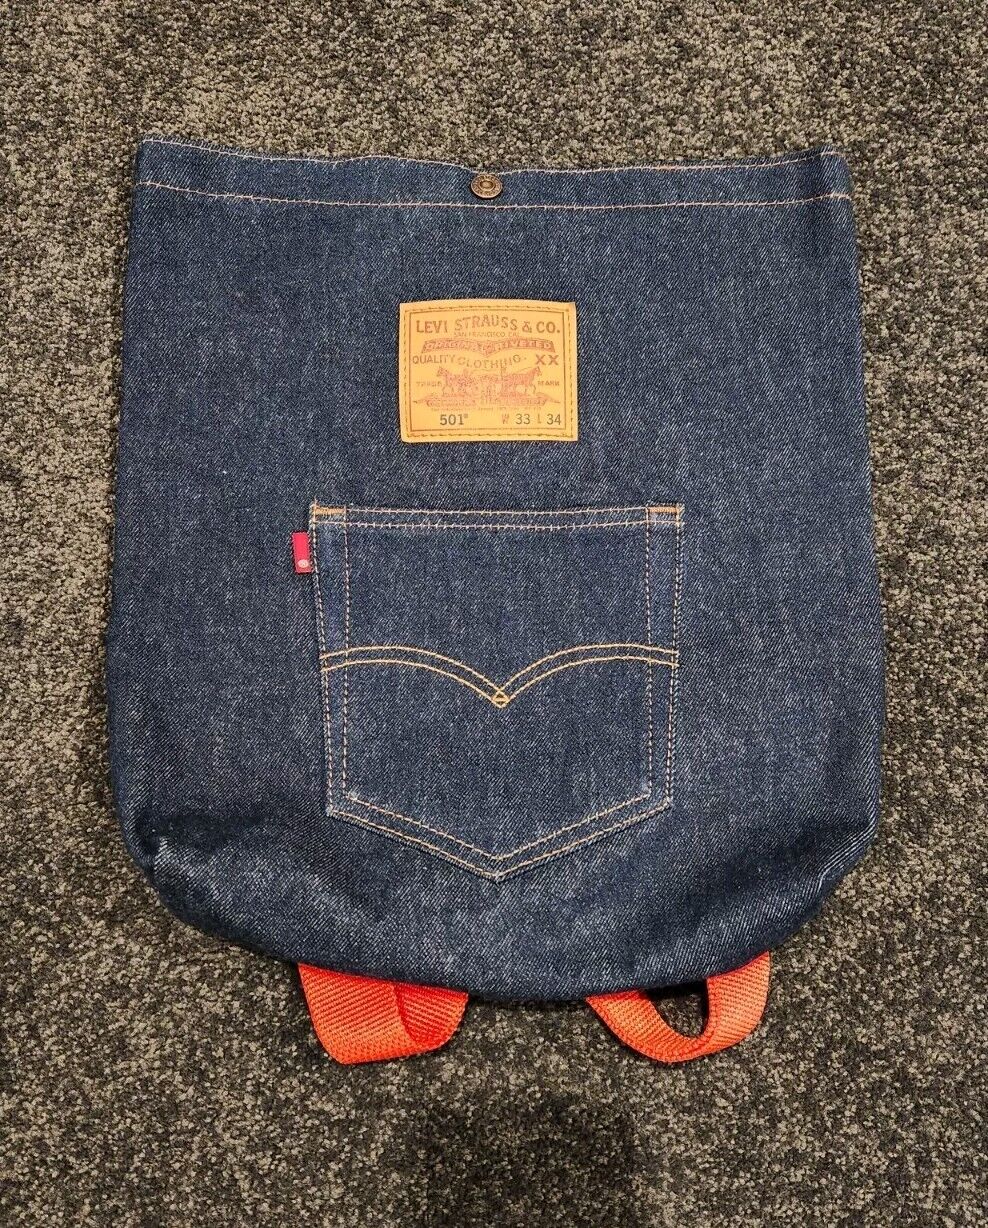 Levi's Levis 501 Denim Back Pocket Backpack Shoulder Tote Bag New Without Tags